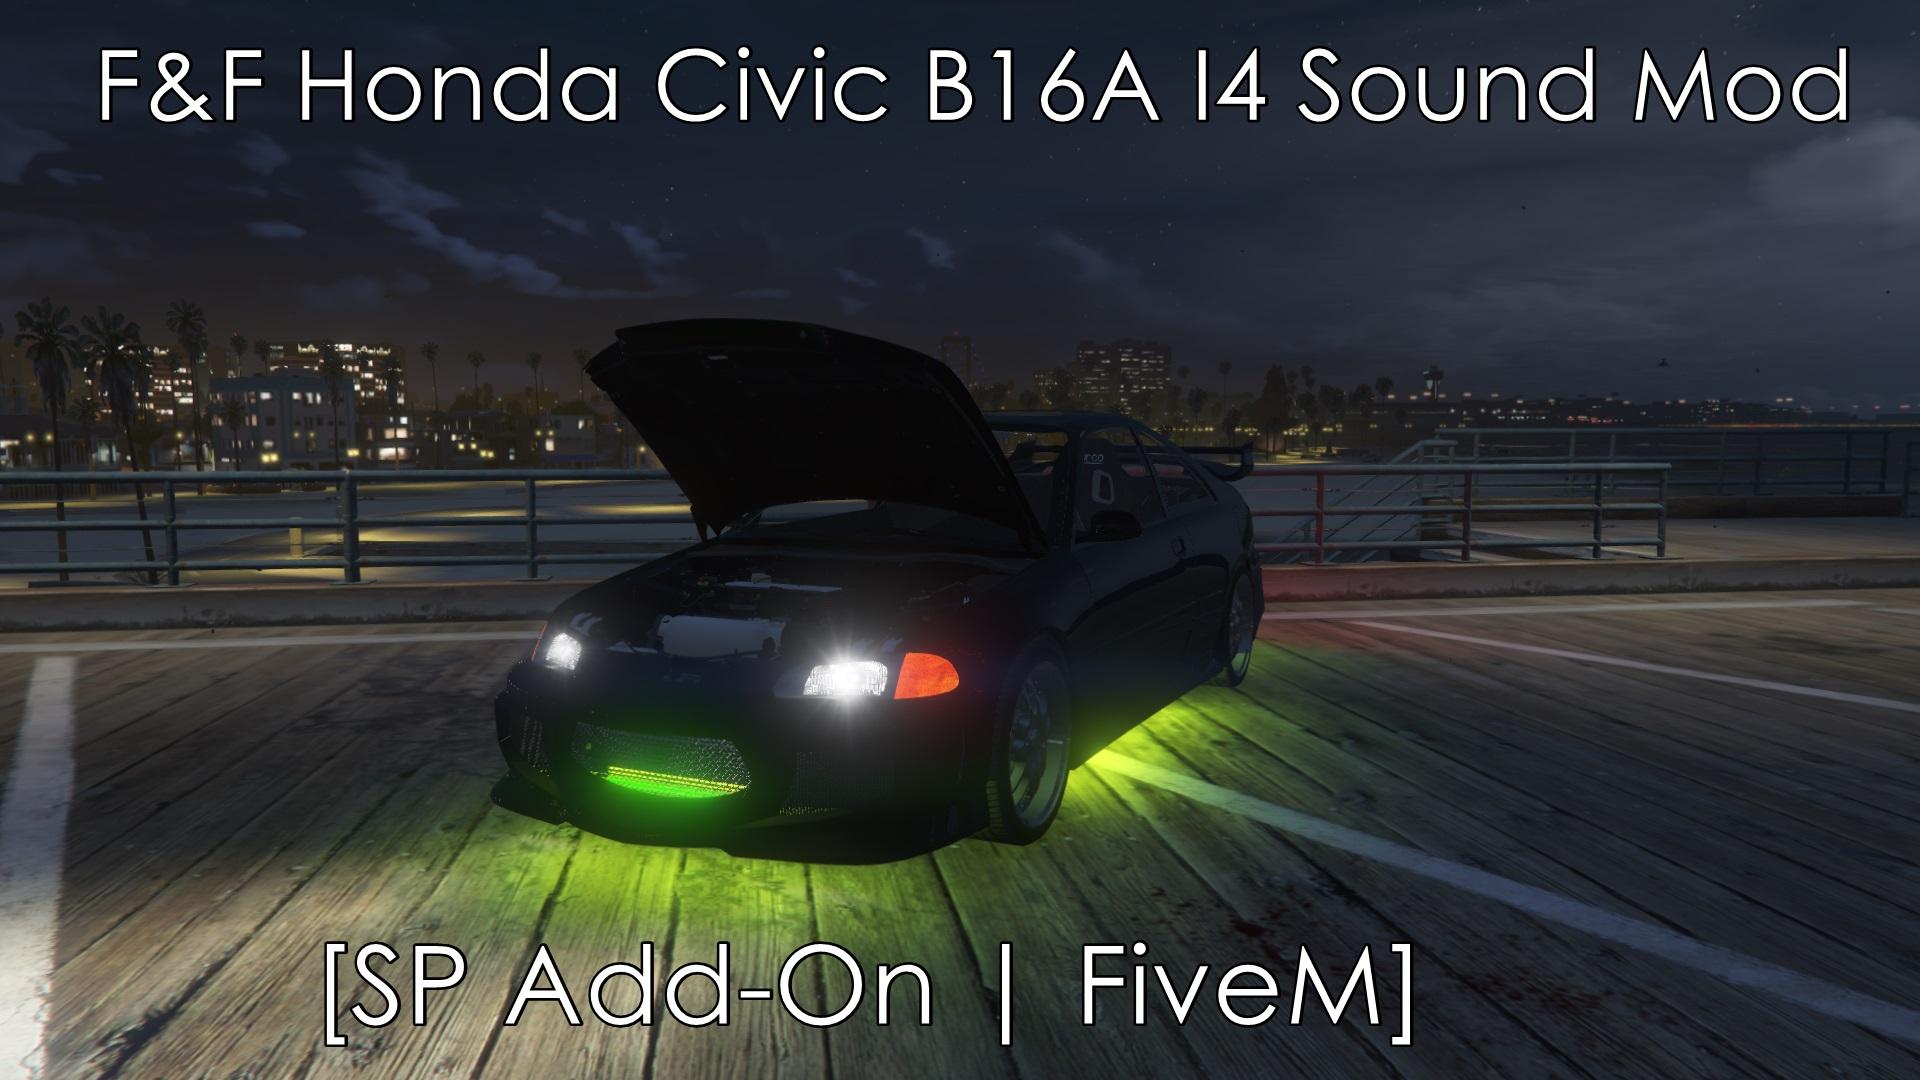 BMW M4 S55 I6 Akrapovic Sound Mod [SP Add-On